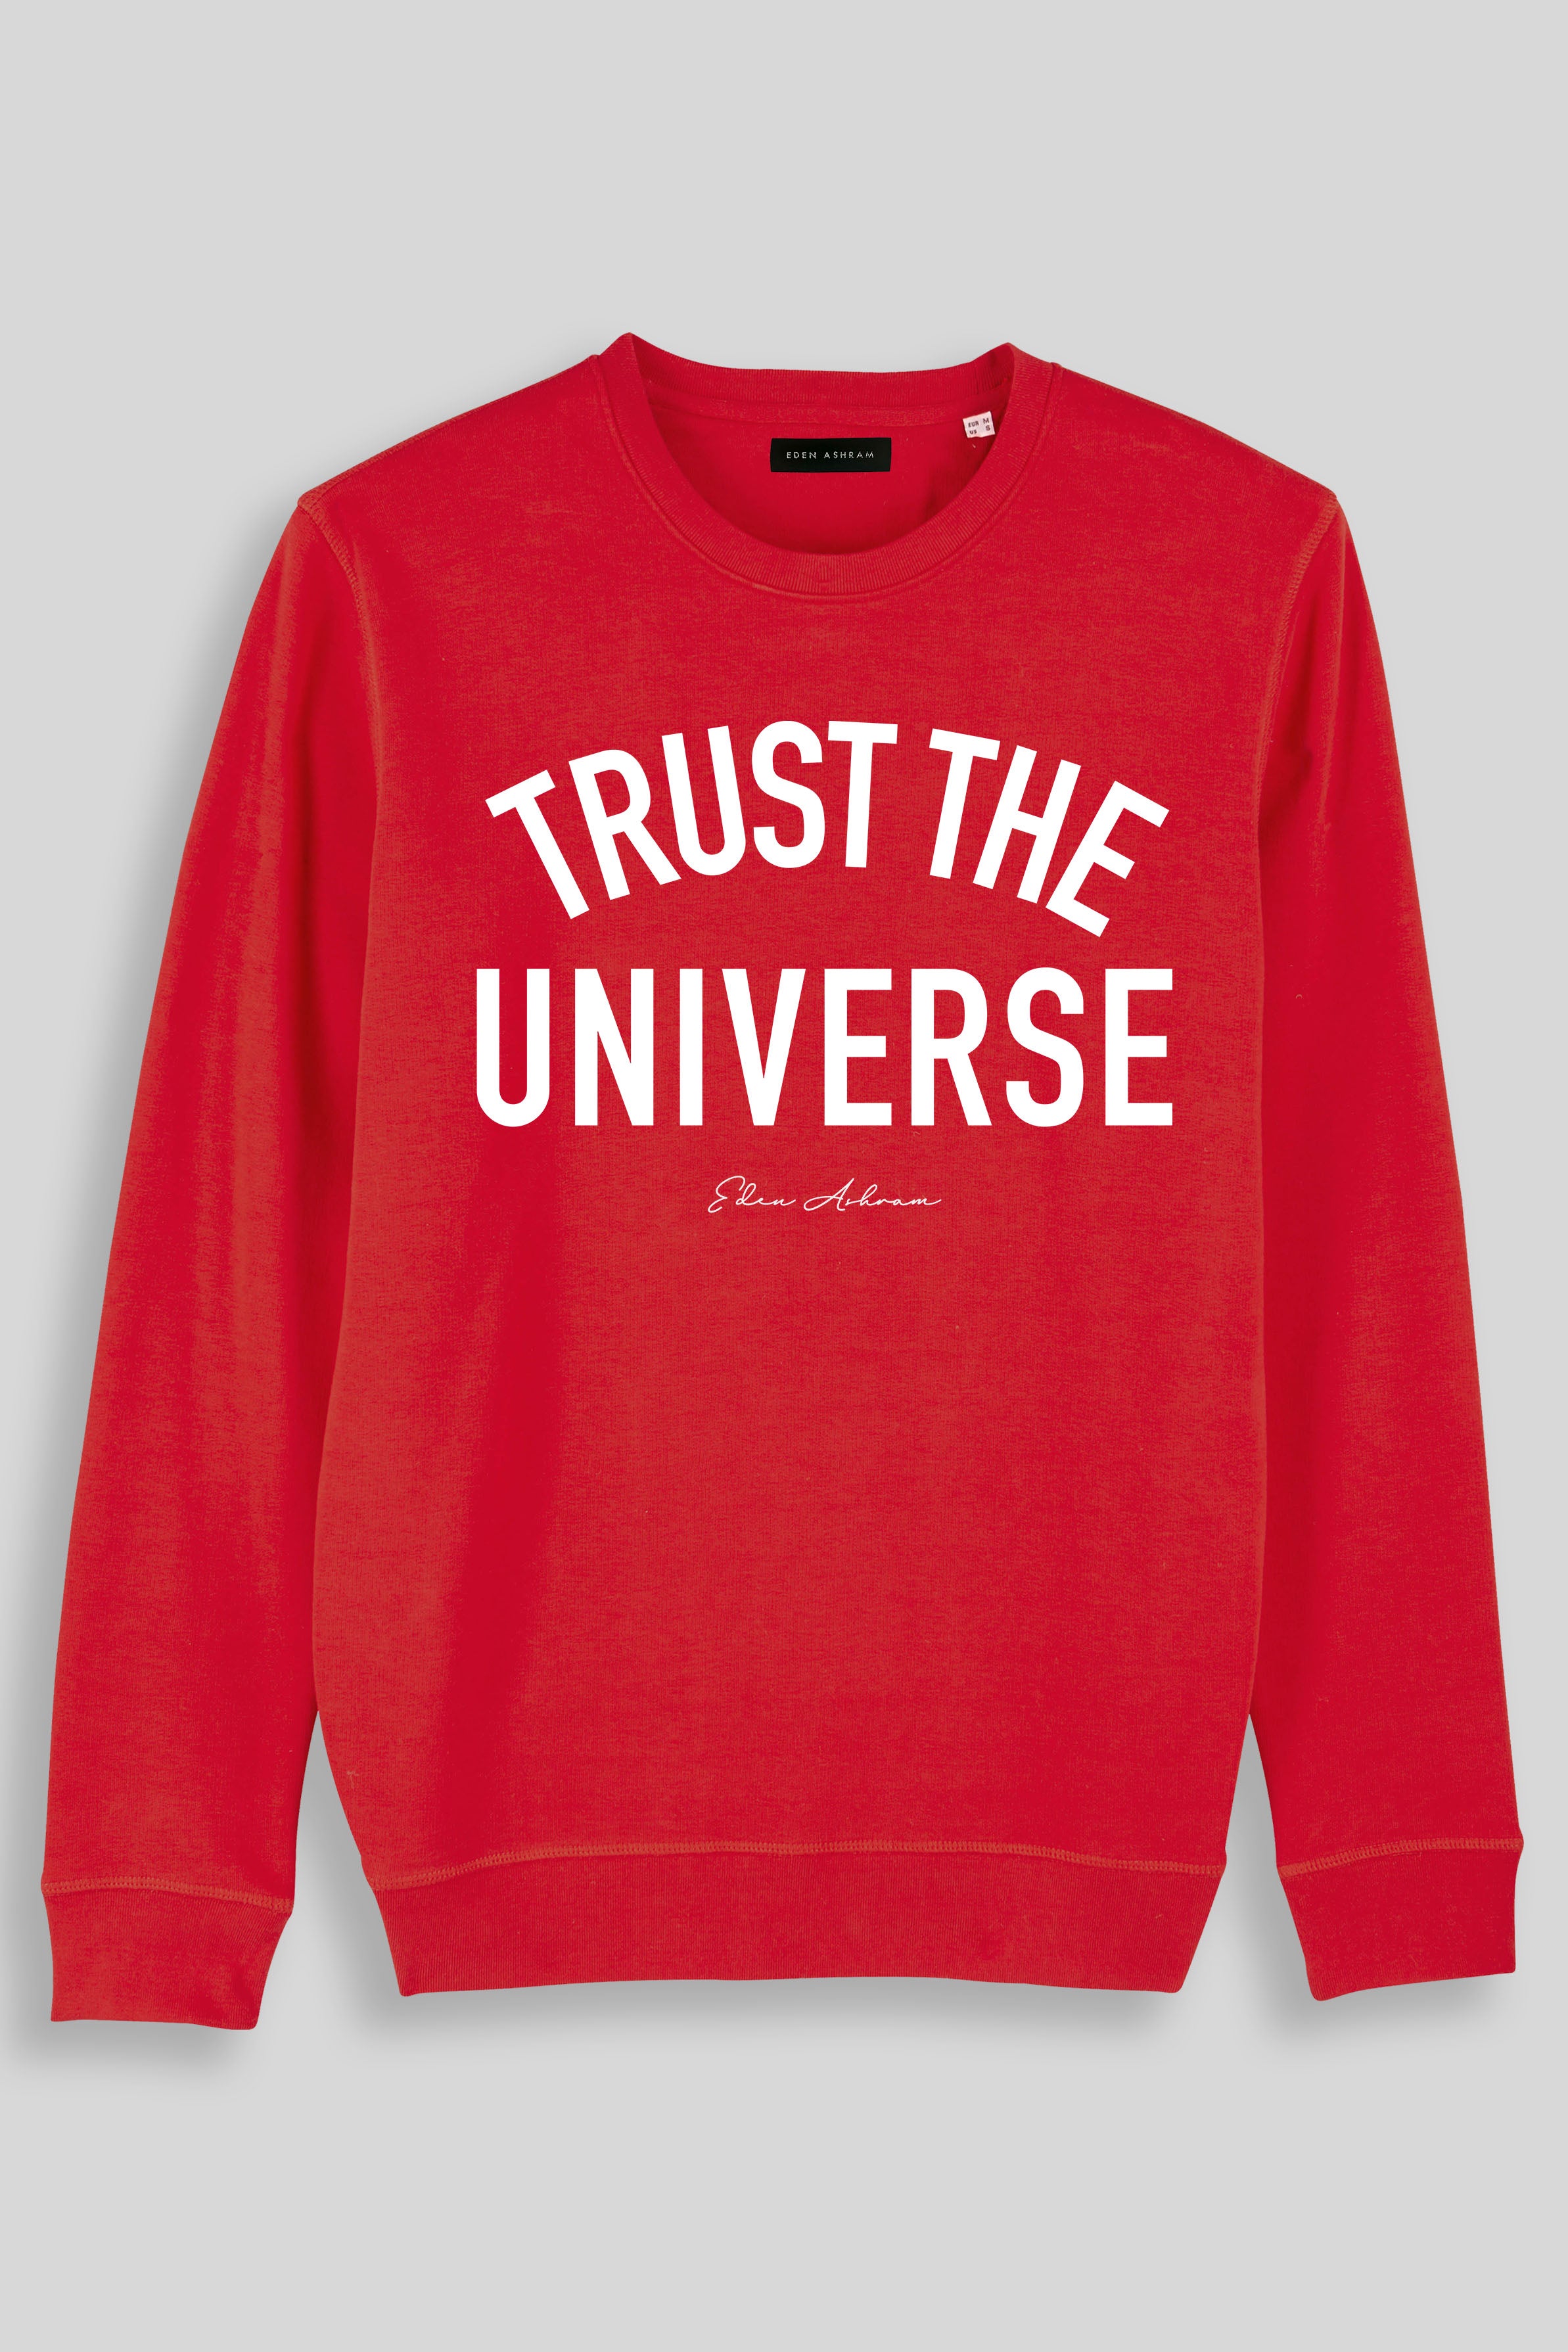 EDEN ASHRAM Trust The Universe Premium Crew Neck Sweatshirt Red